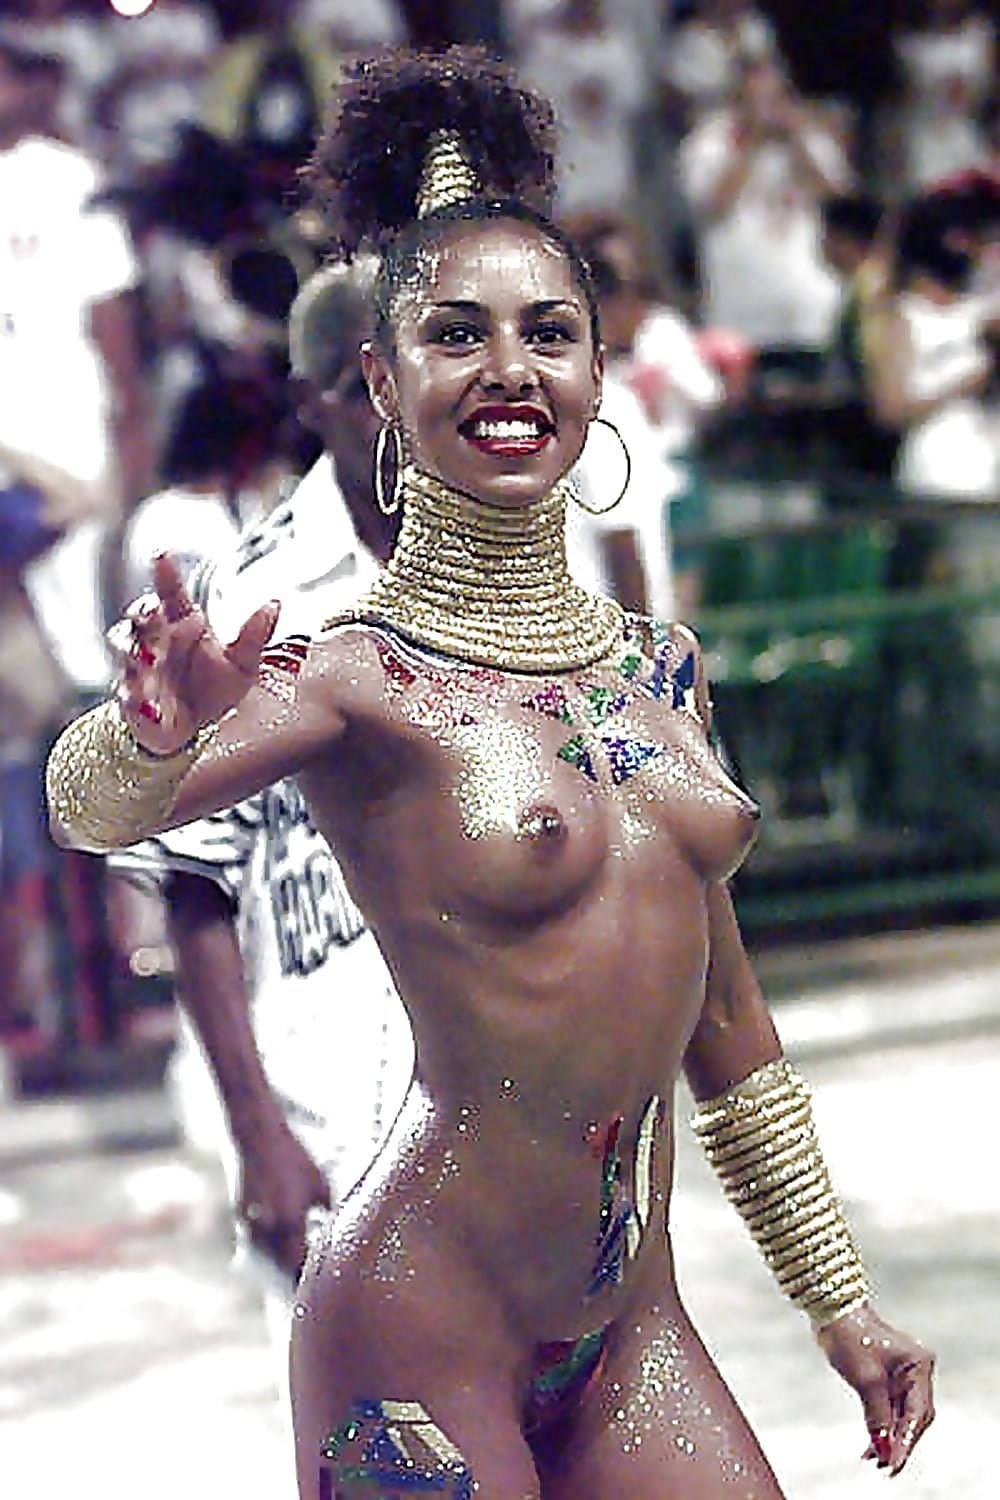 Эротический карнавал (60 фото) - секс и порно